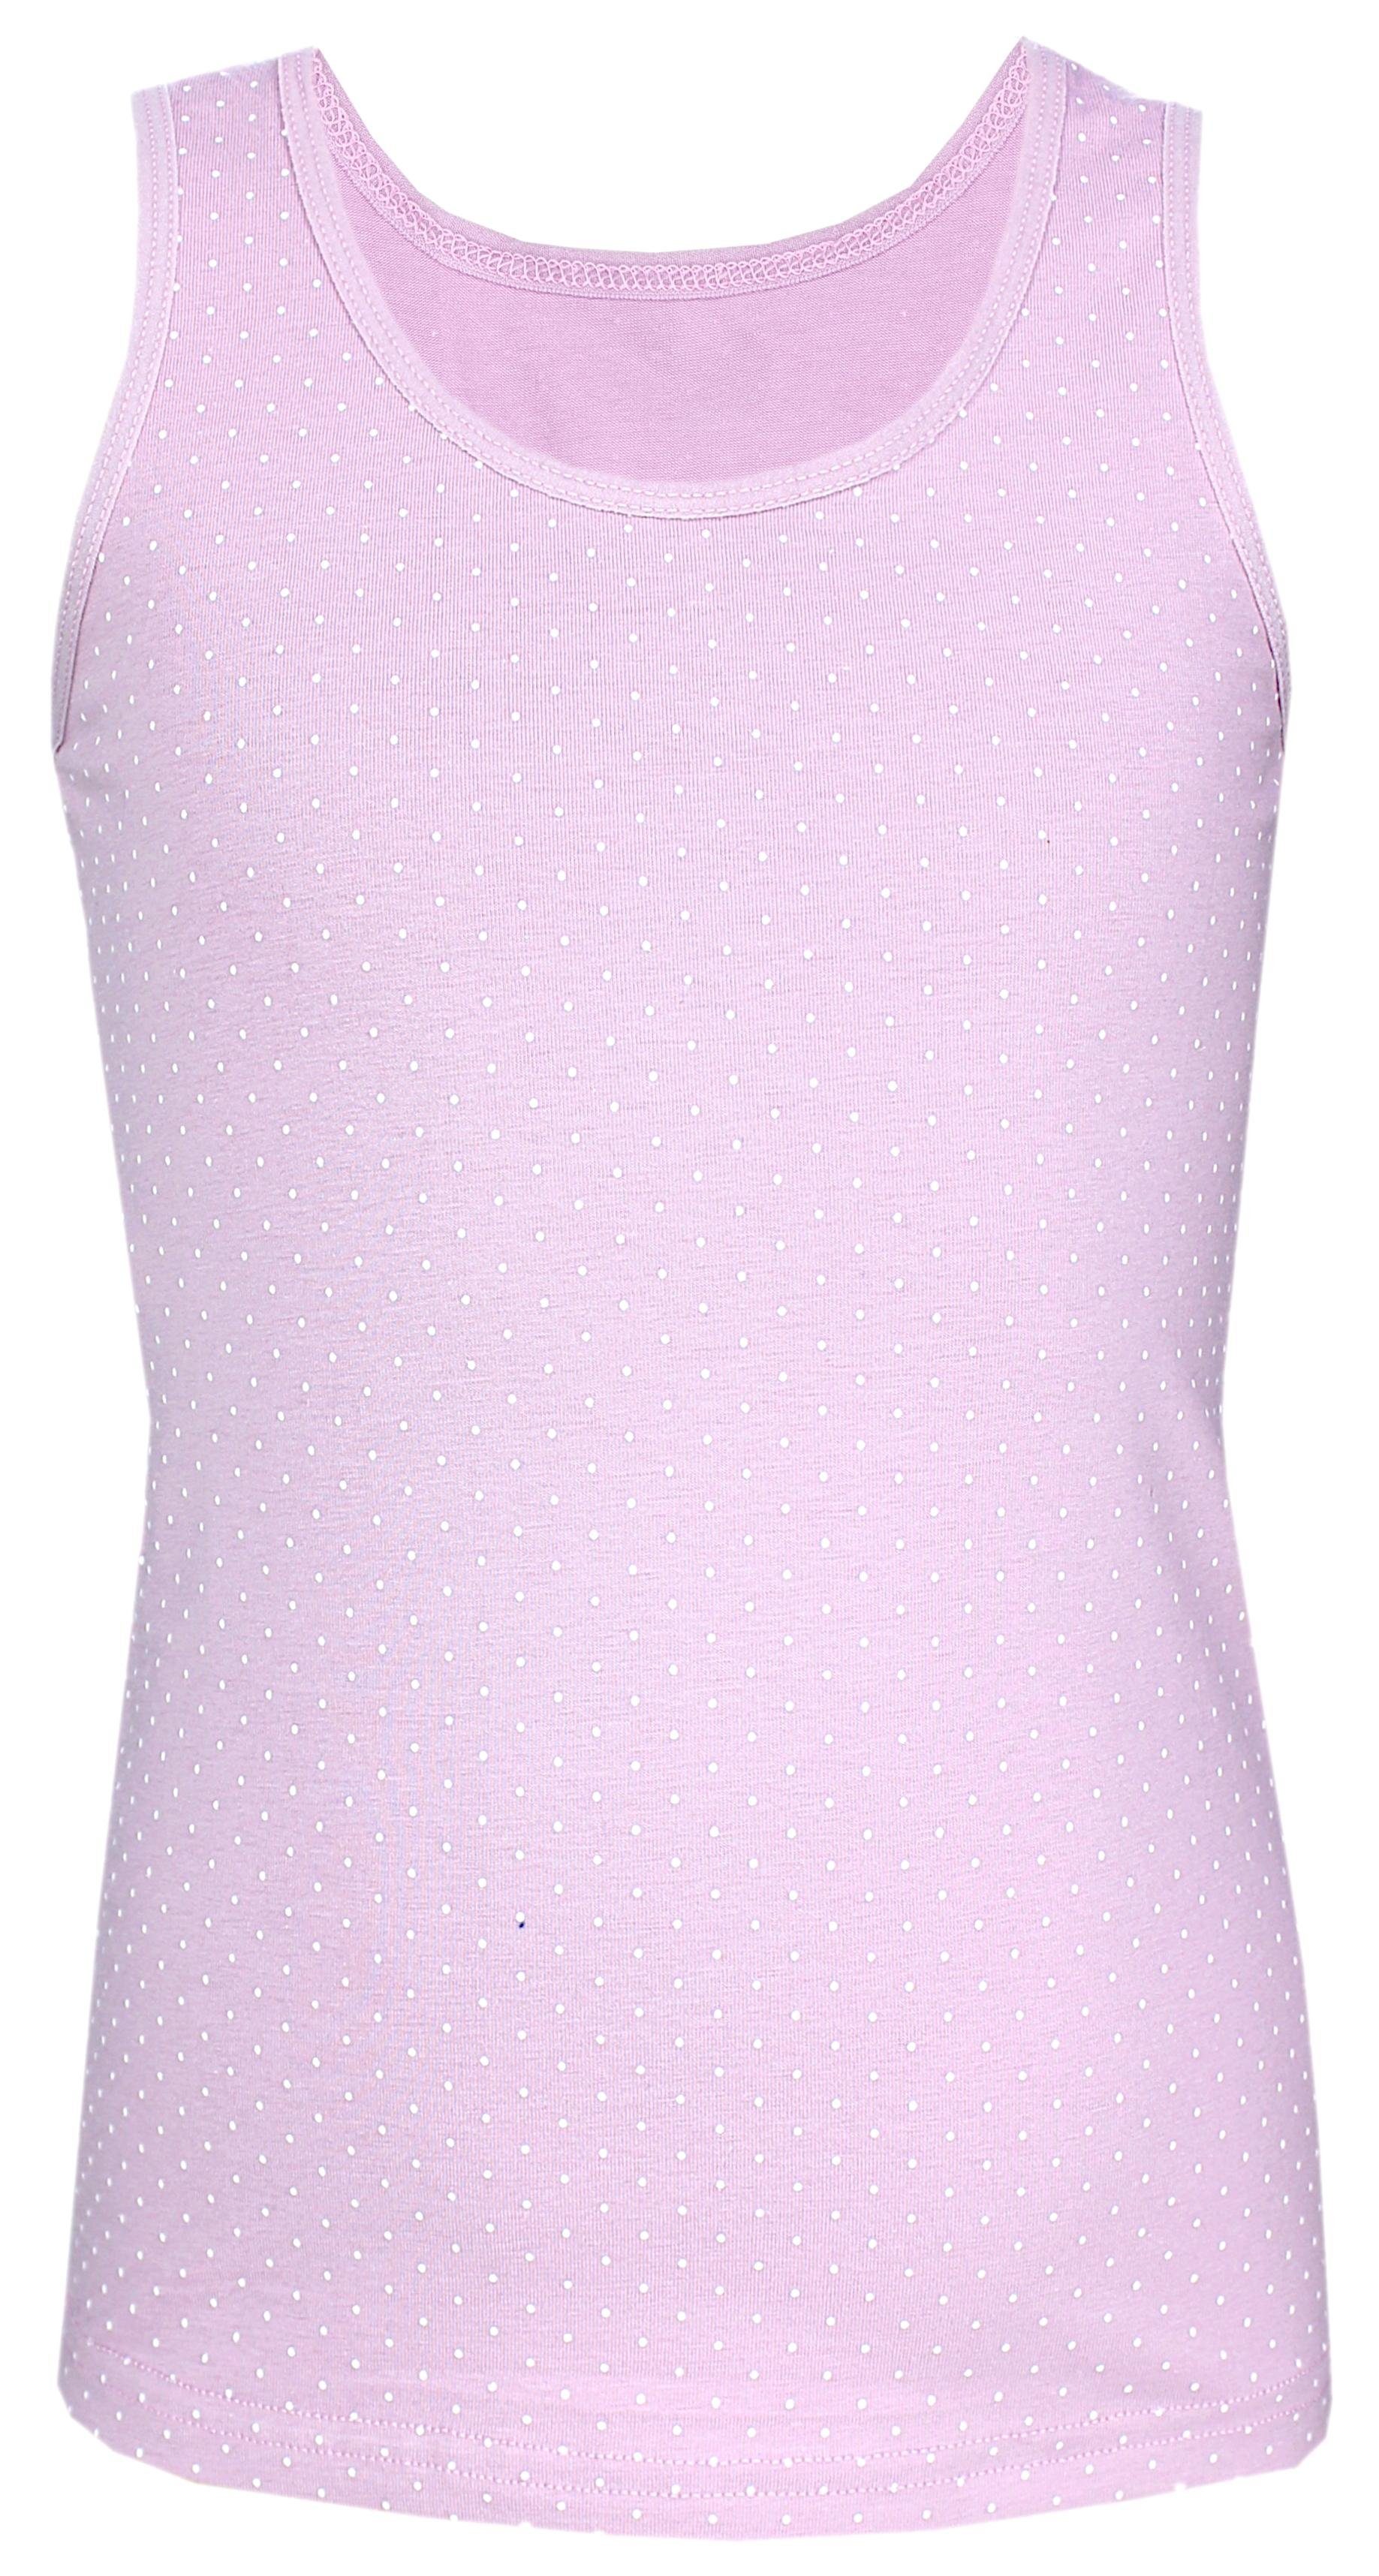 Baumwolle Rosa Pack Punkte Top Ärmellos Unterhemd Mädchen 5er Unterhemd Lila Blau Kinder TupTam Tank TupTam